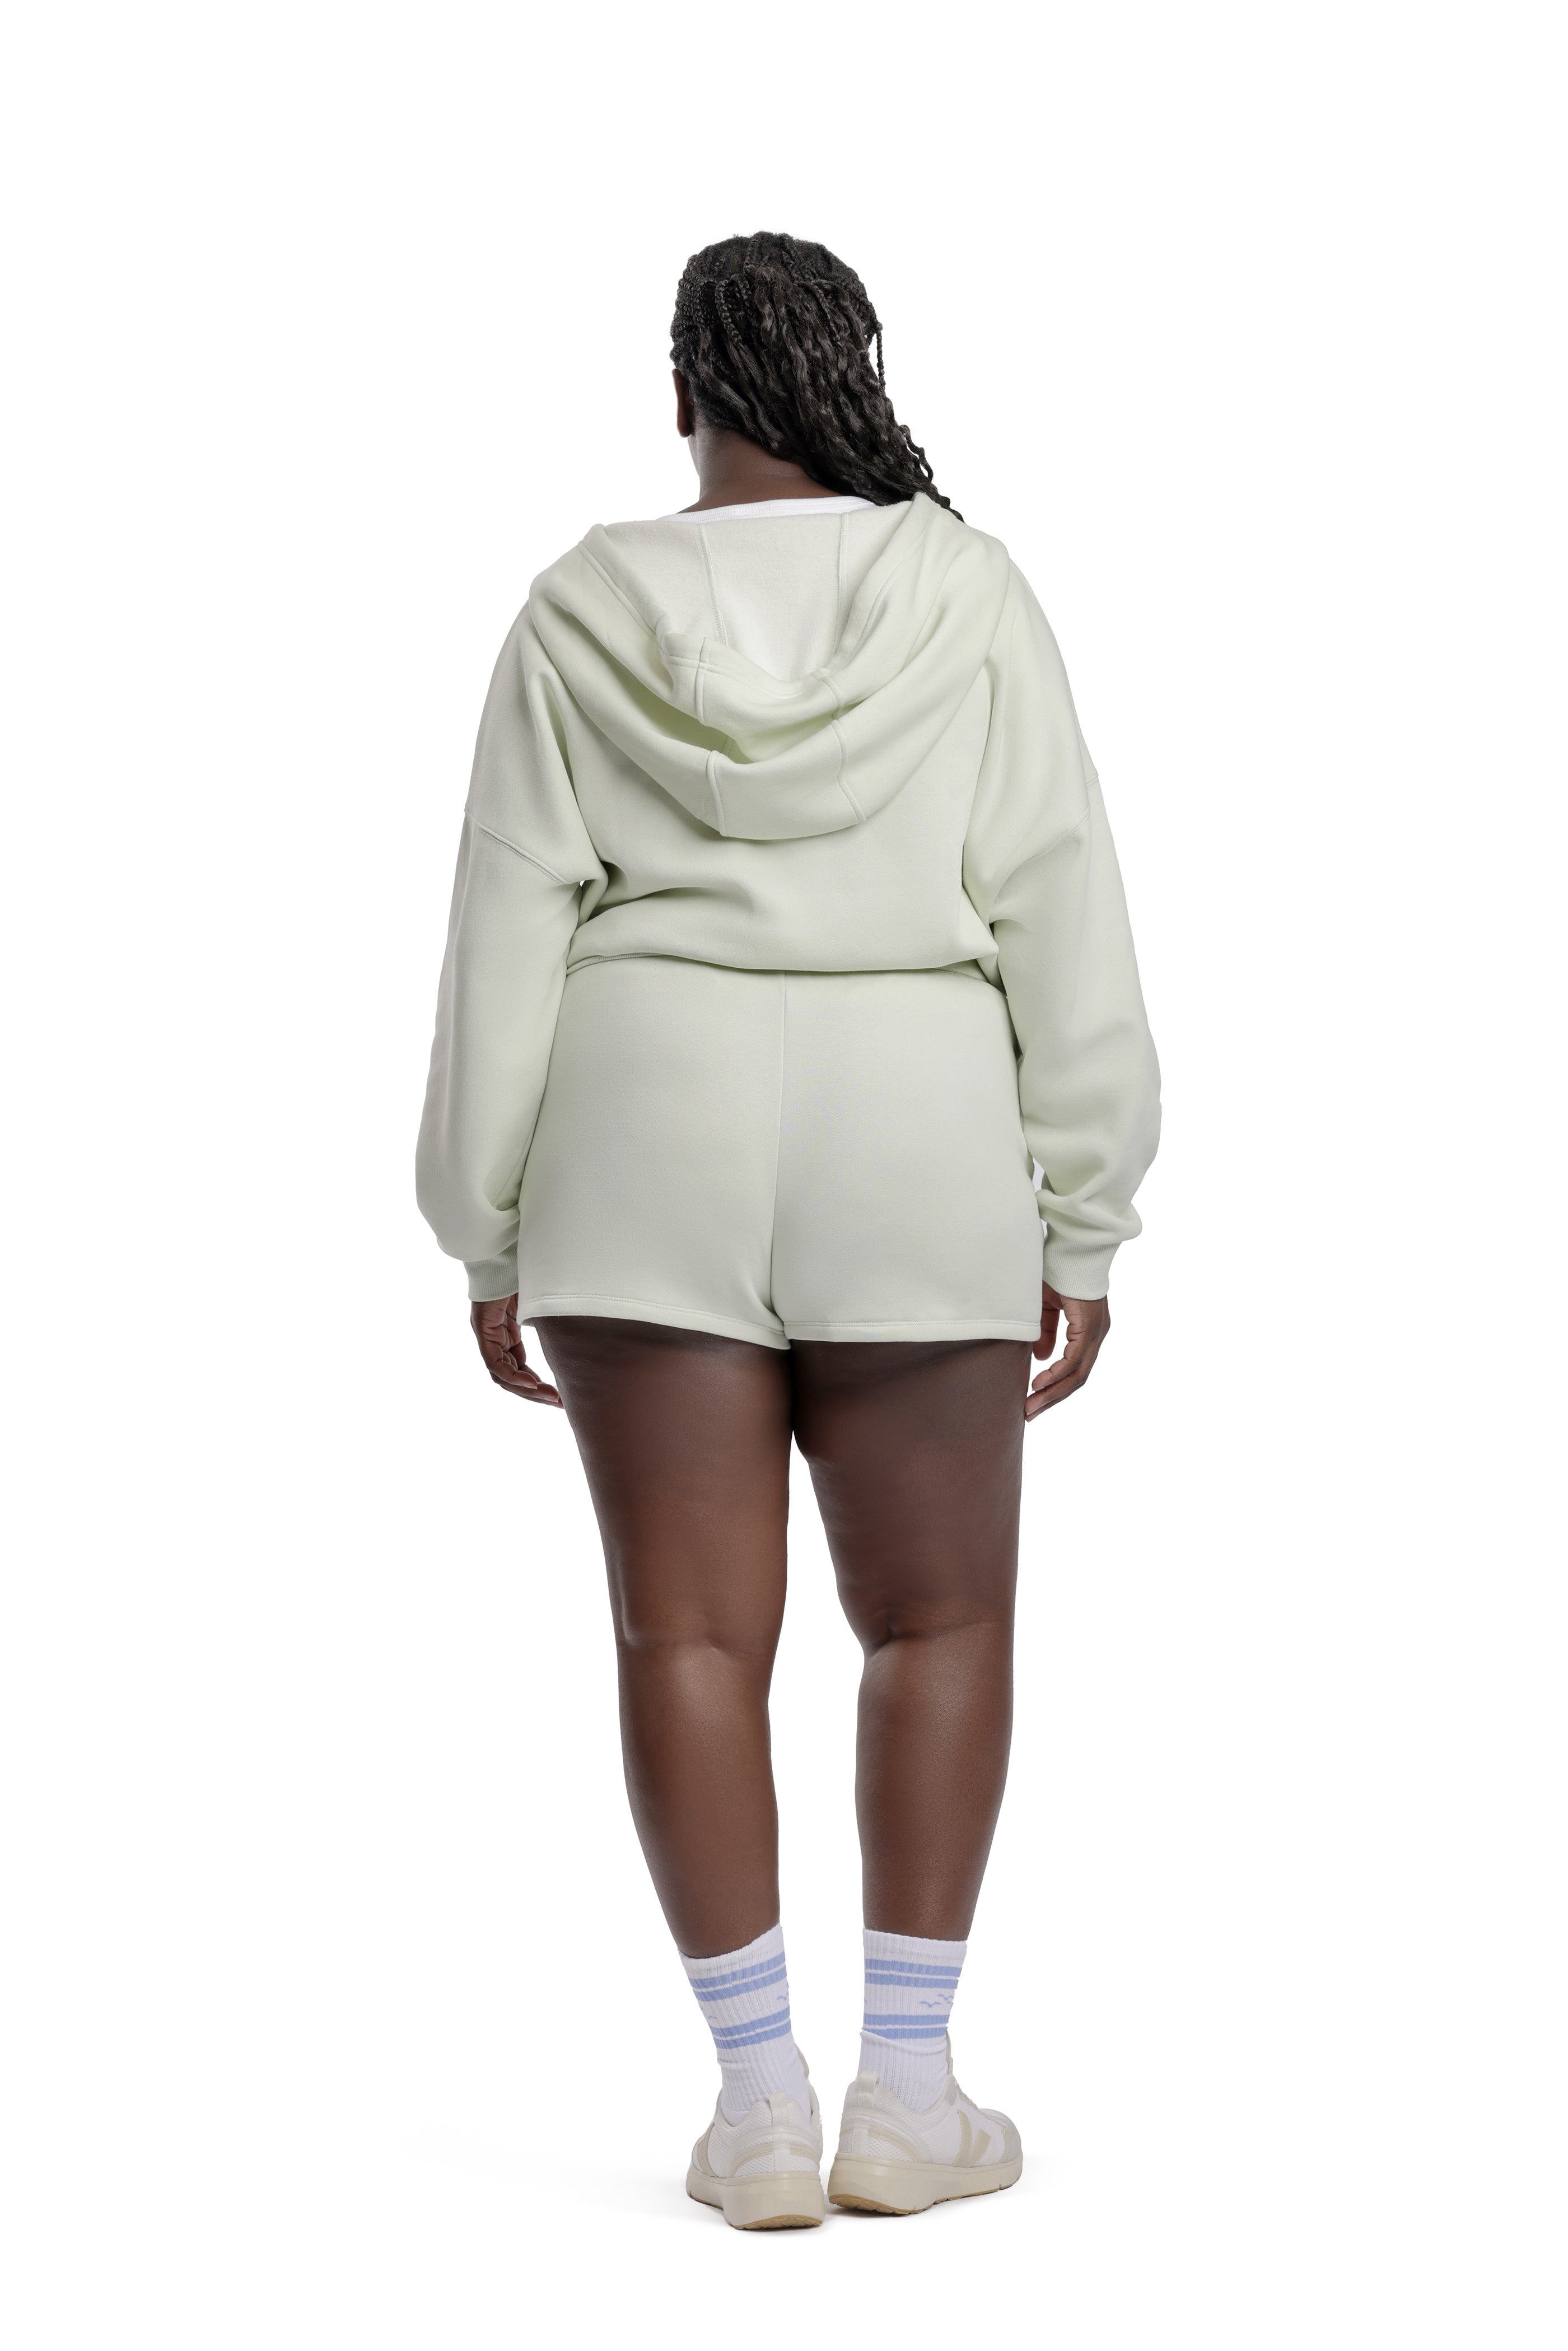 Women’s premium fleece relaxed sweatsuit set in Olive